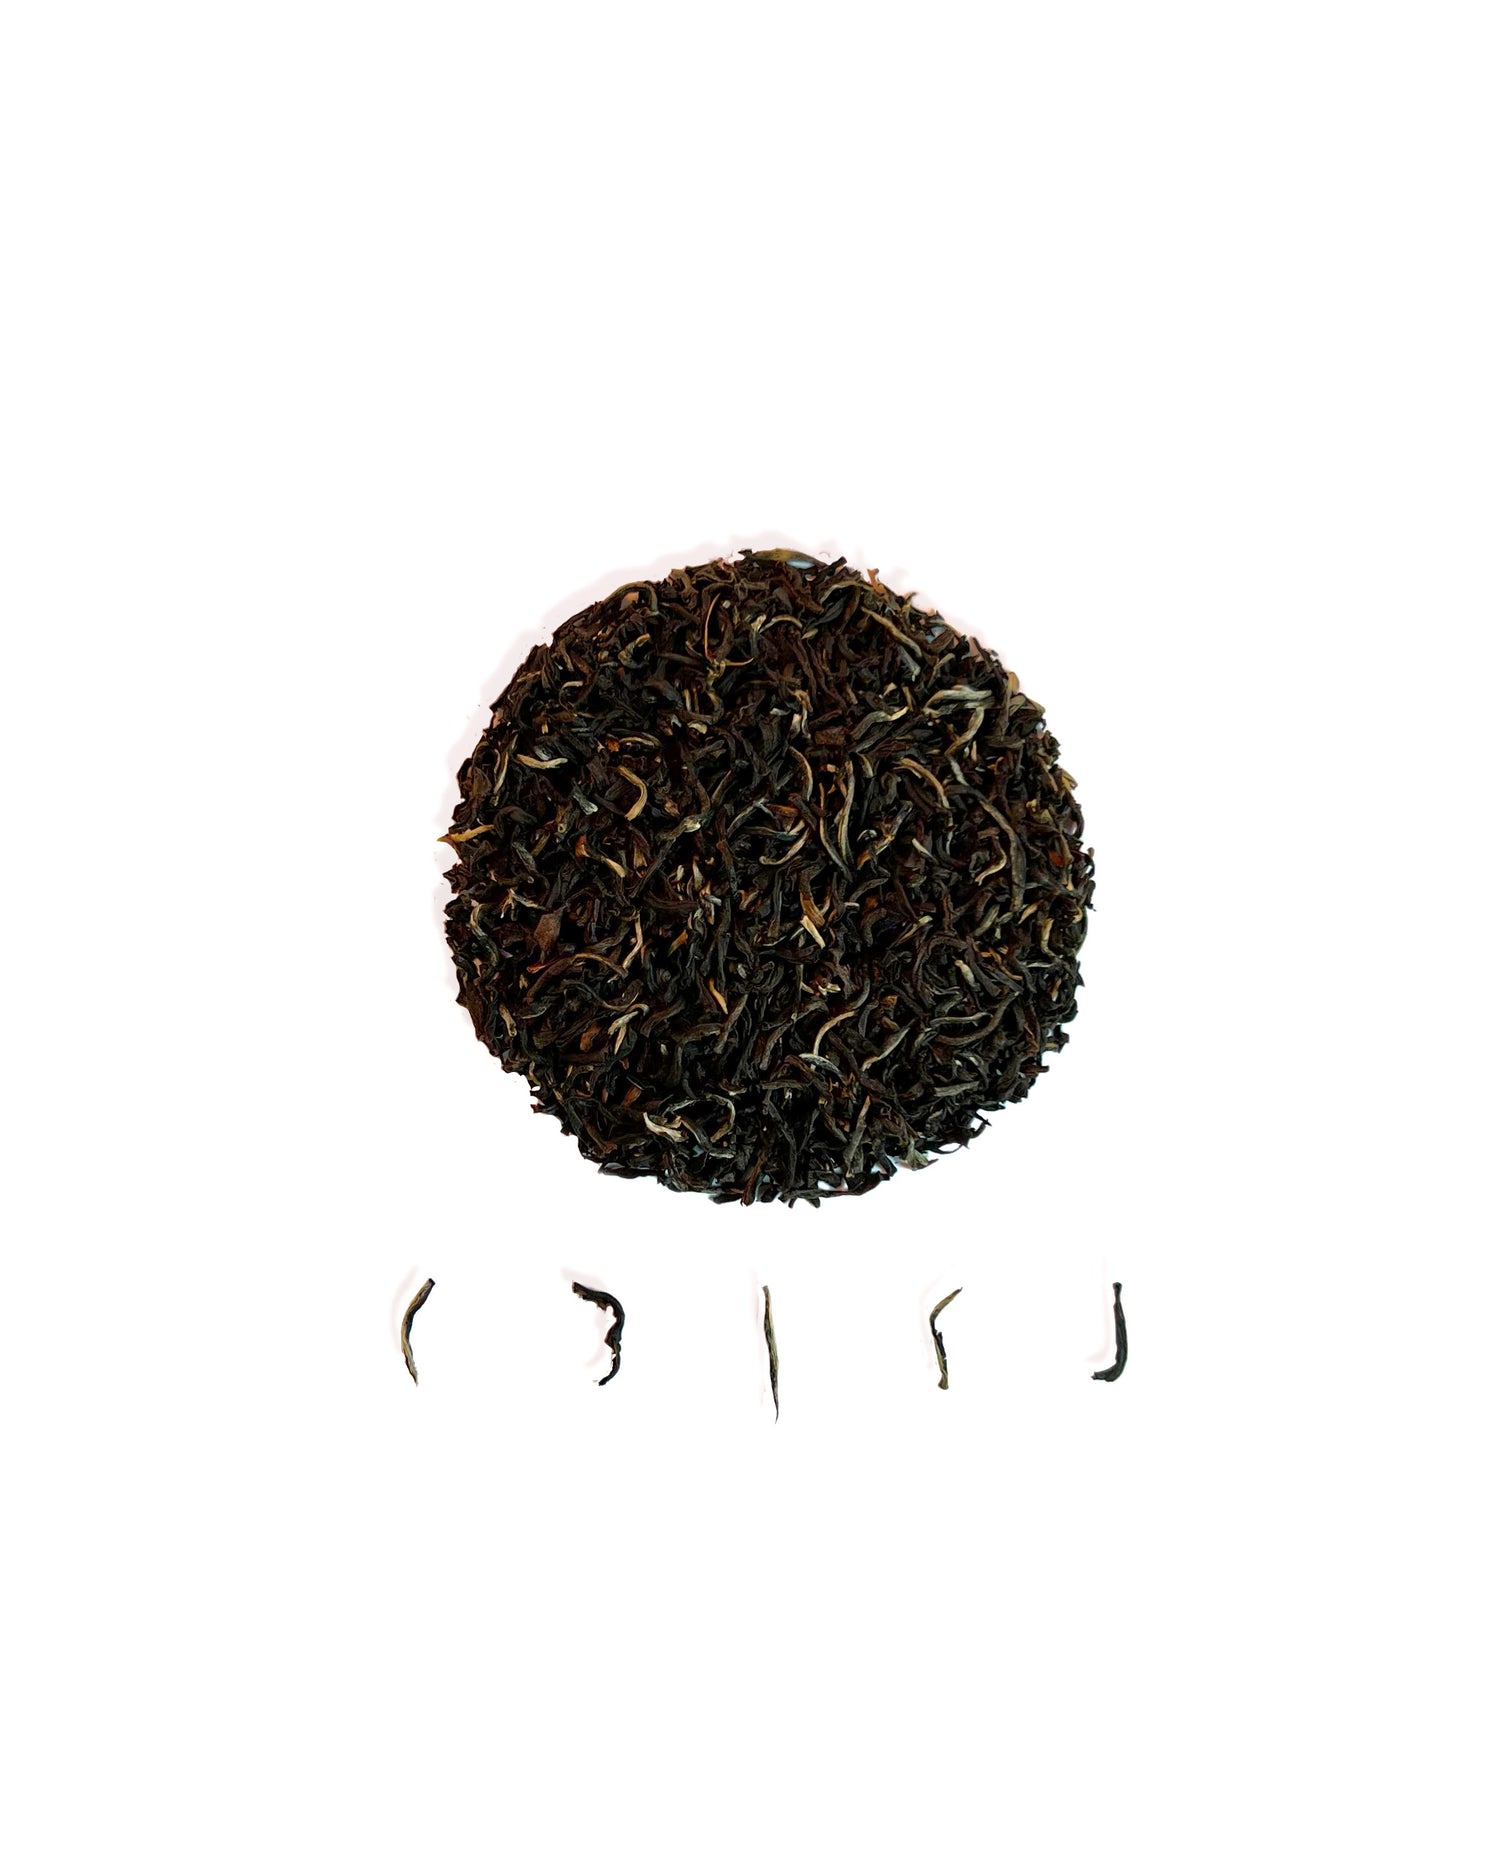 Medium Ceylon Ceylon Black Tea Loose Tea Leaf